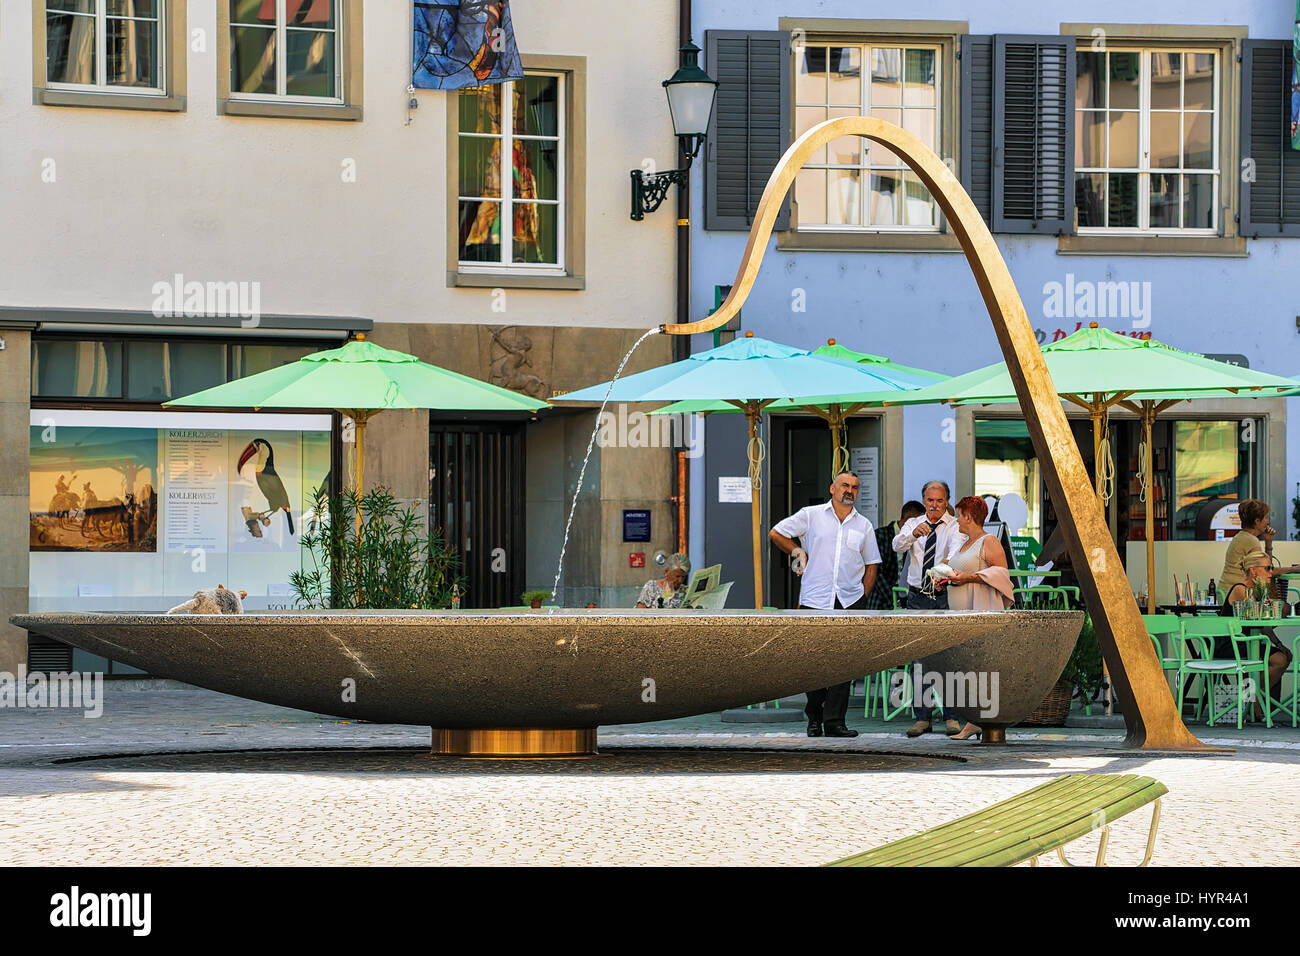 Zurich, Switzerland - September 2, 2016: Fountain and people on Munsterhof square in Zurich, Switzerland Stock Photo